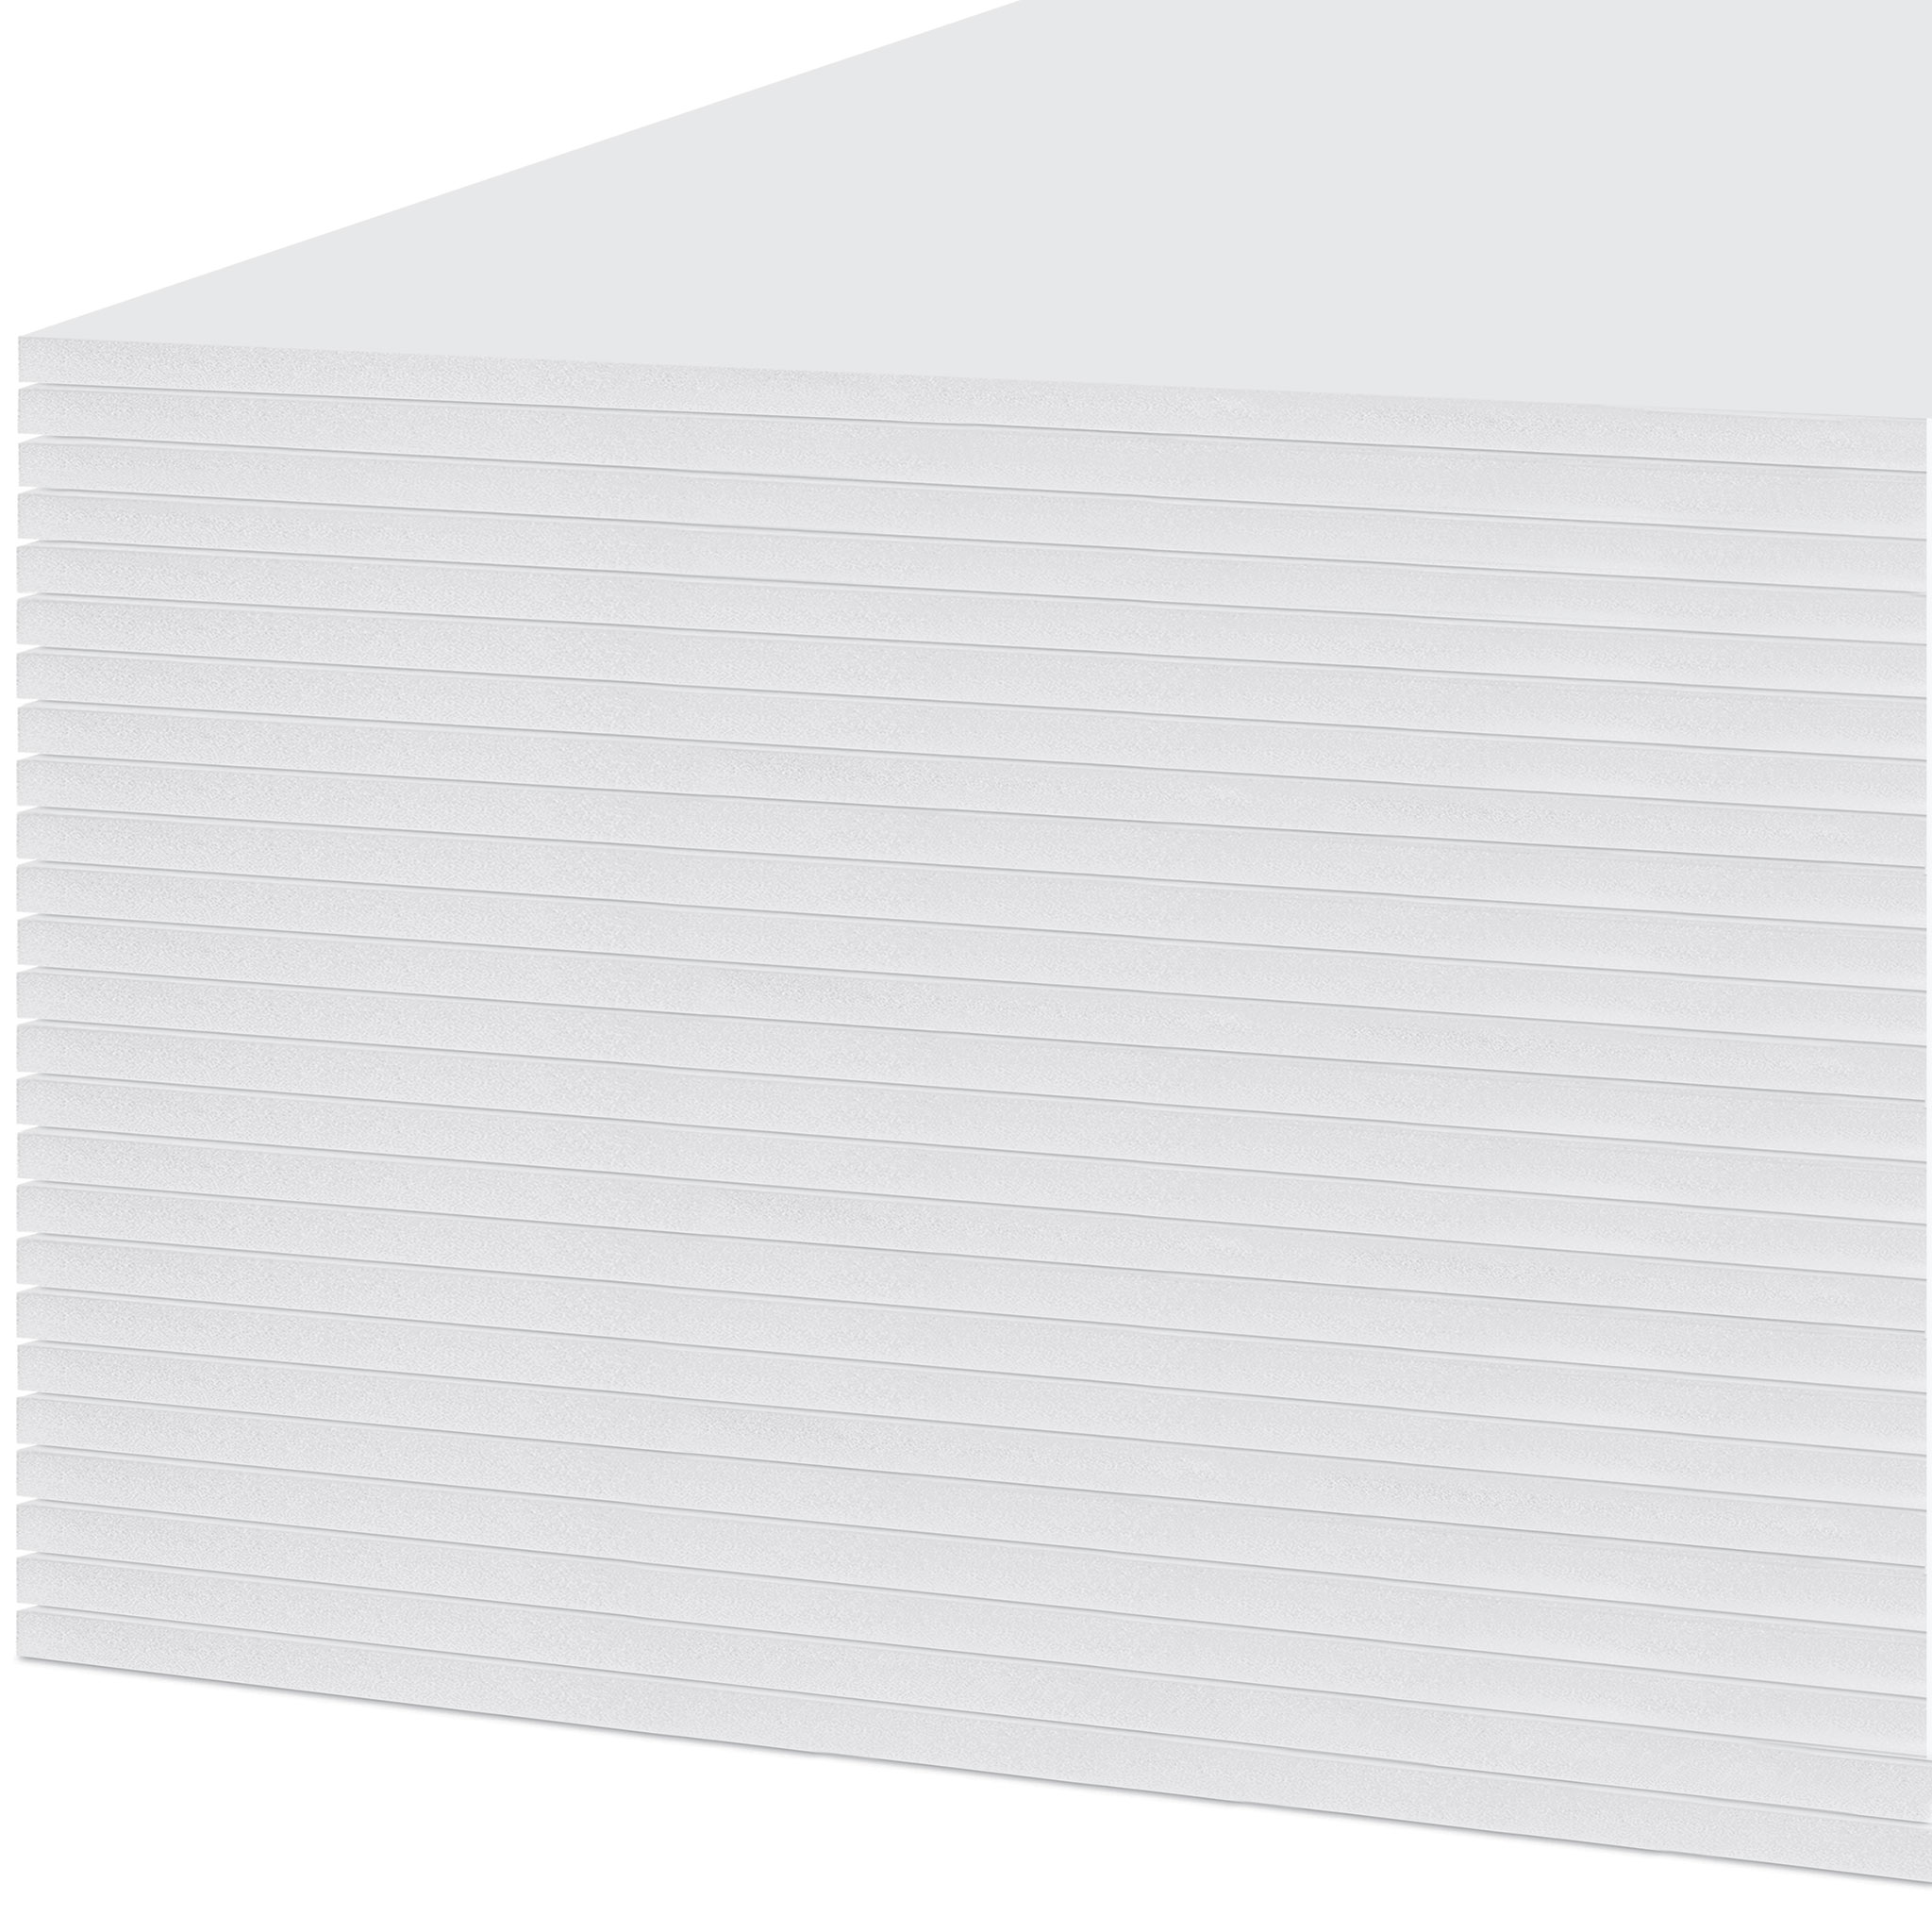 Elmer's Foamboard Pack - 48 x 96 x 3/16, White, Pkg of 25